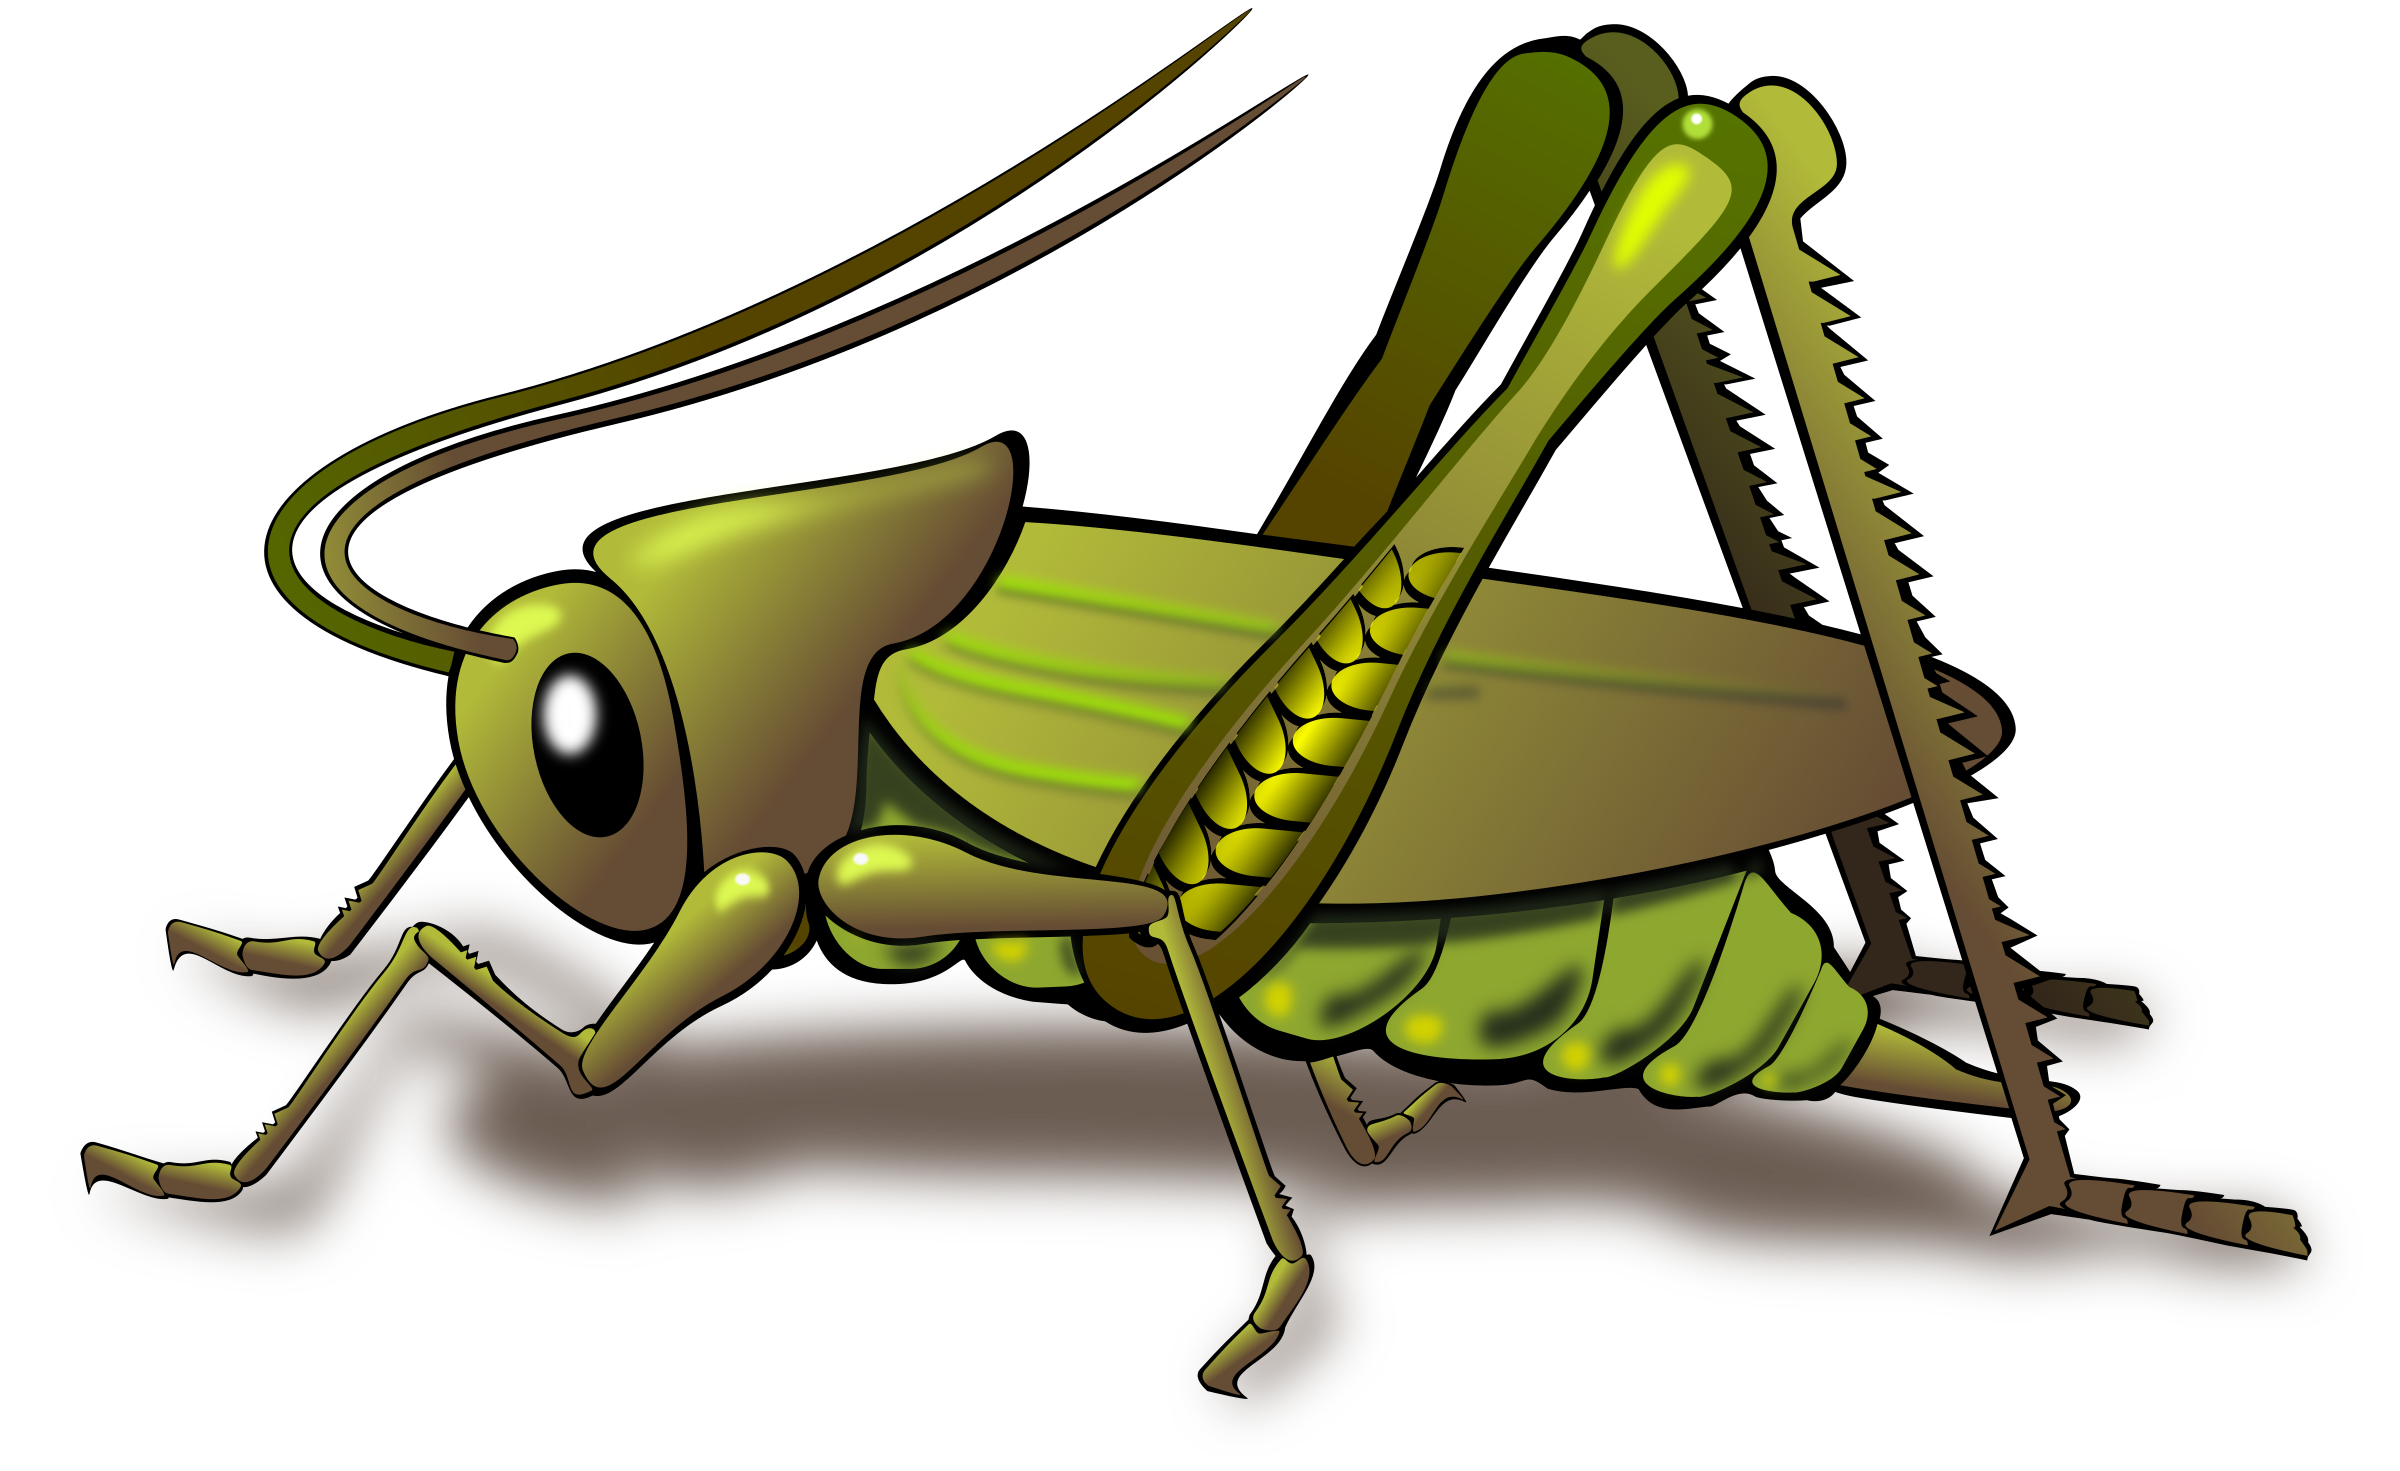 ... a green grasshopper